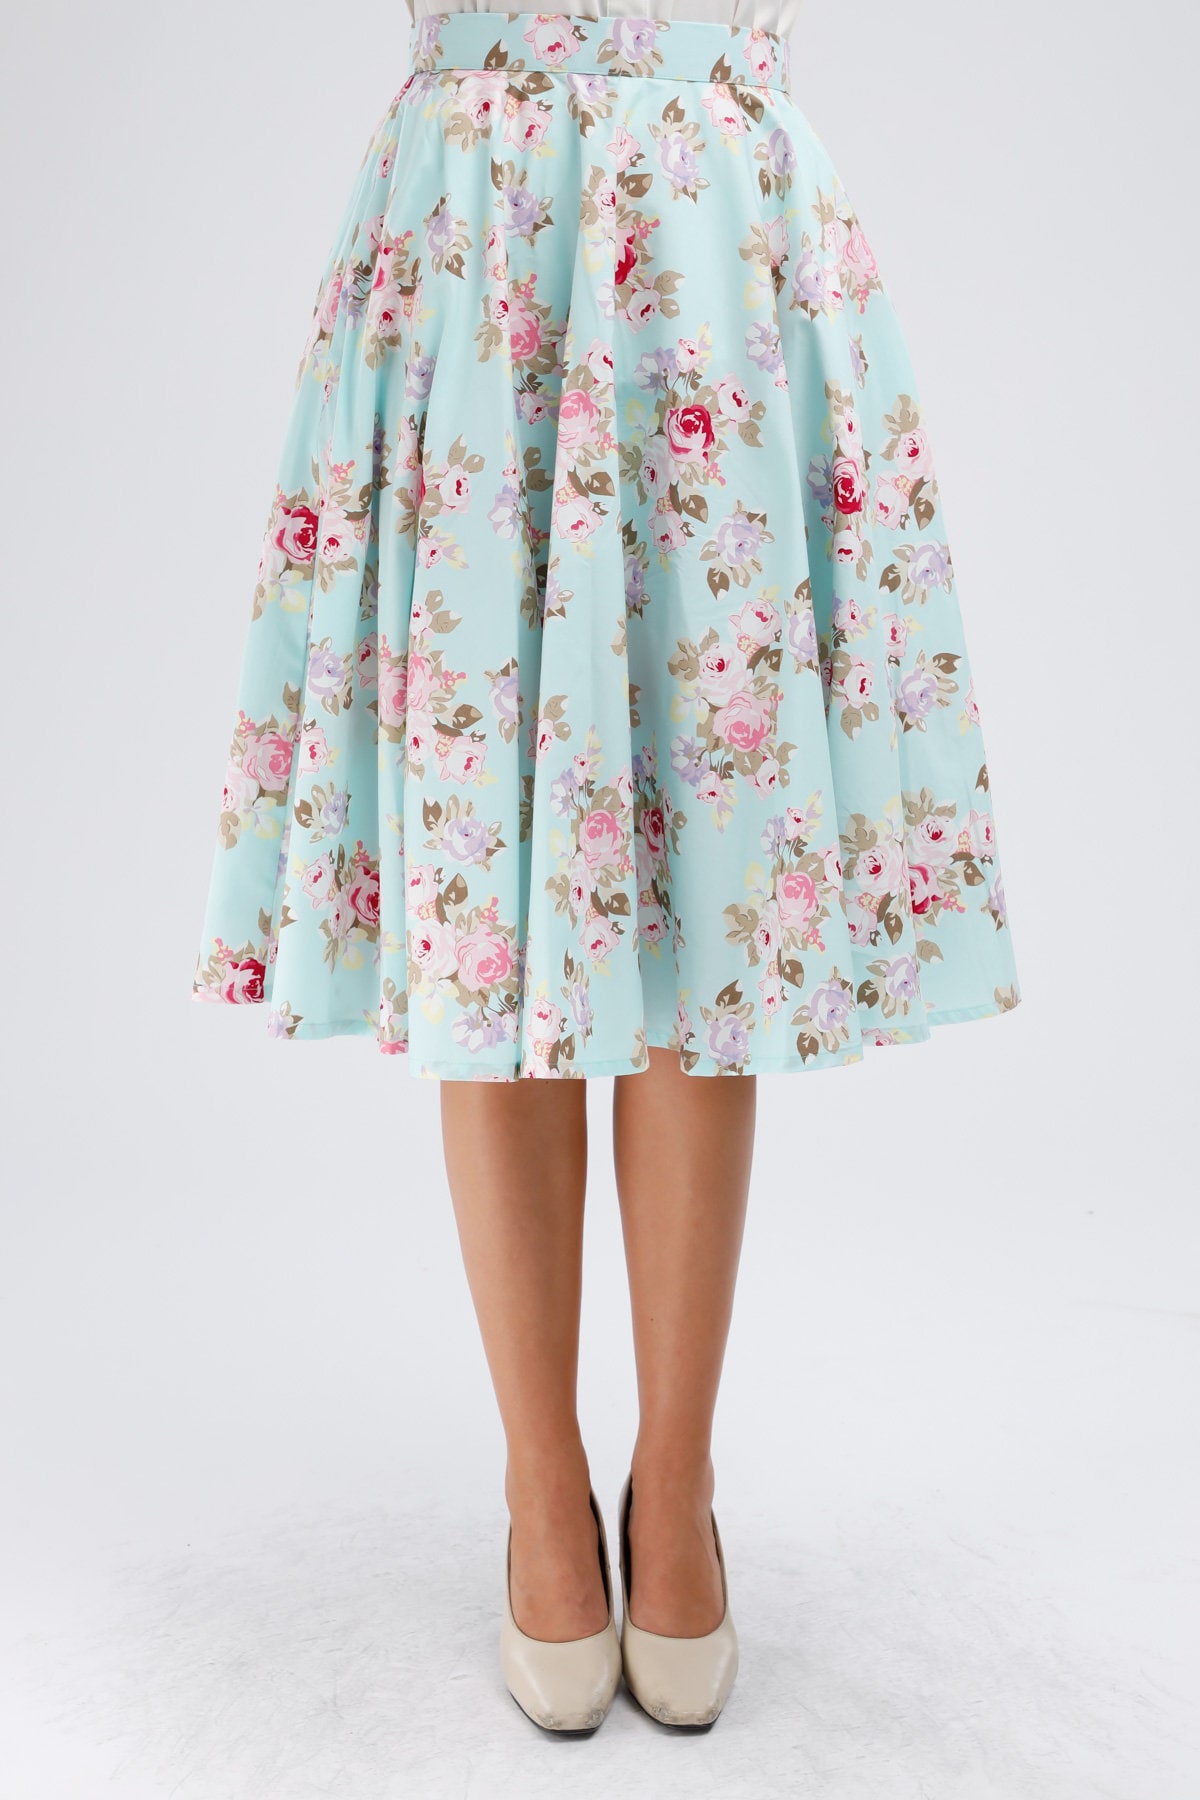 Floral Skirt Full Circle Skirt With Pockets Pastel Skirt 50s - Etsy